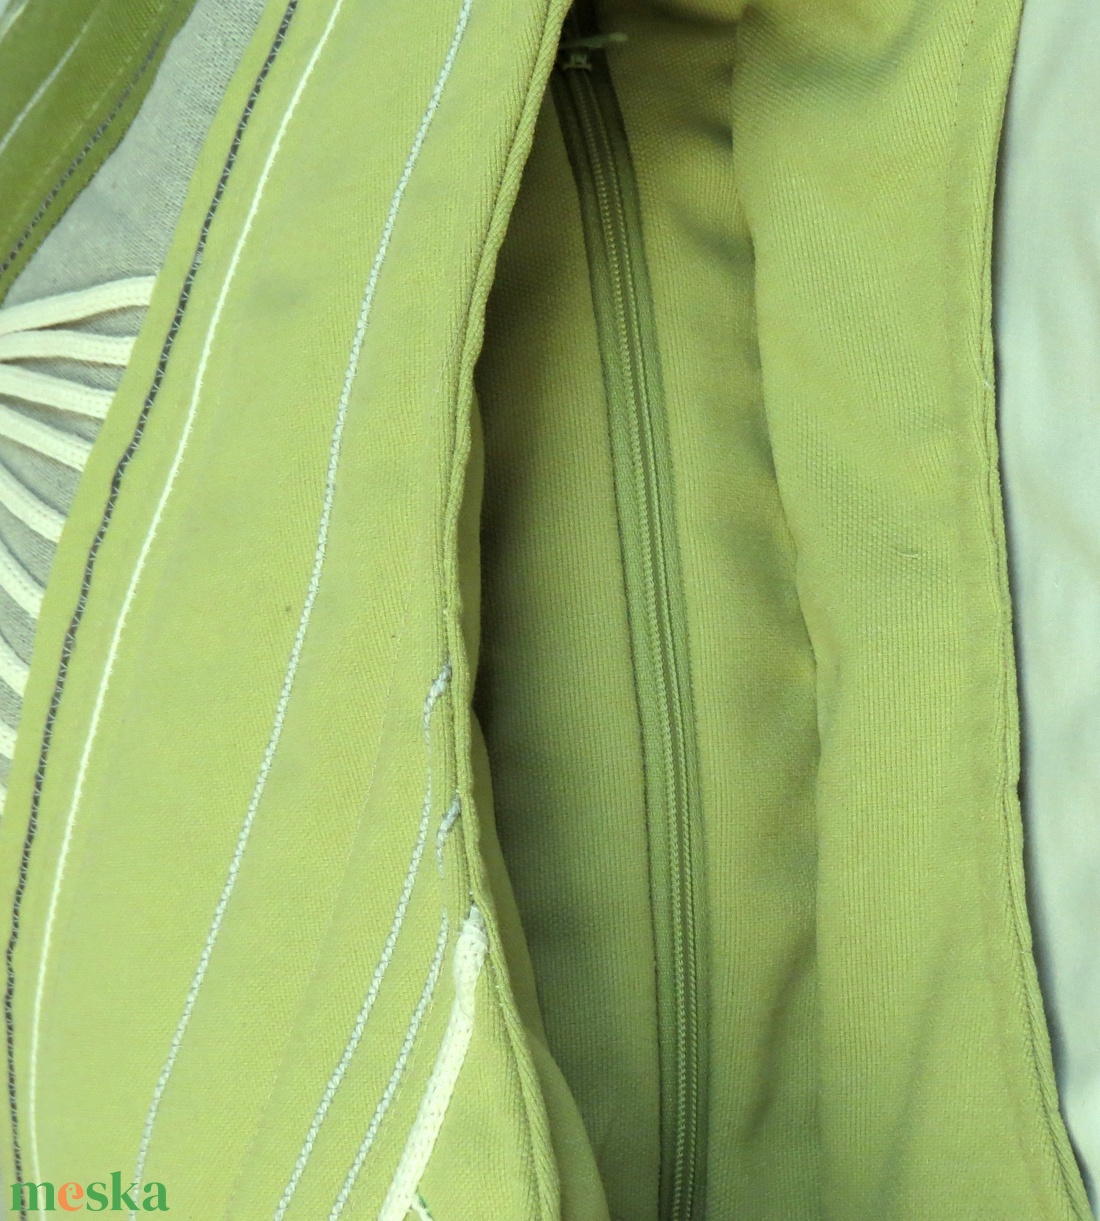 Zöld válltáska,  nagy pakolható táska,  egyedi, designer divat táska, vállon átvethető - táska & tok - kézitáska & válltáska - nagy pakolós táska - Meska.hu